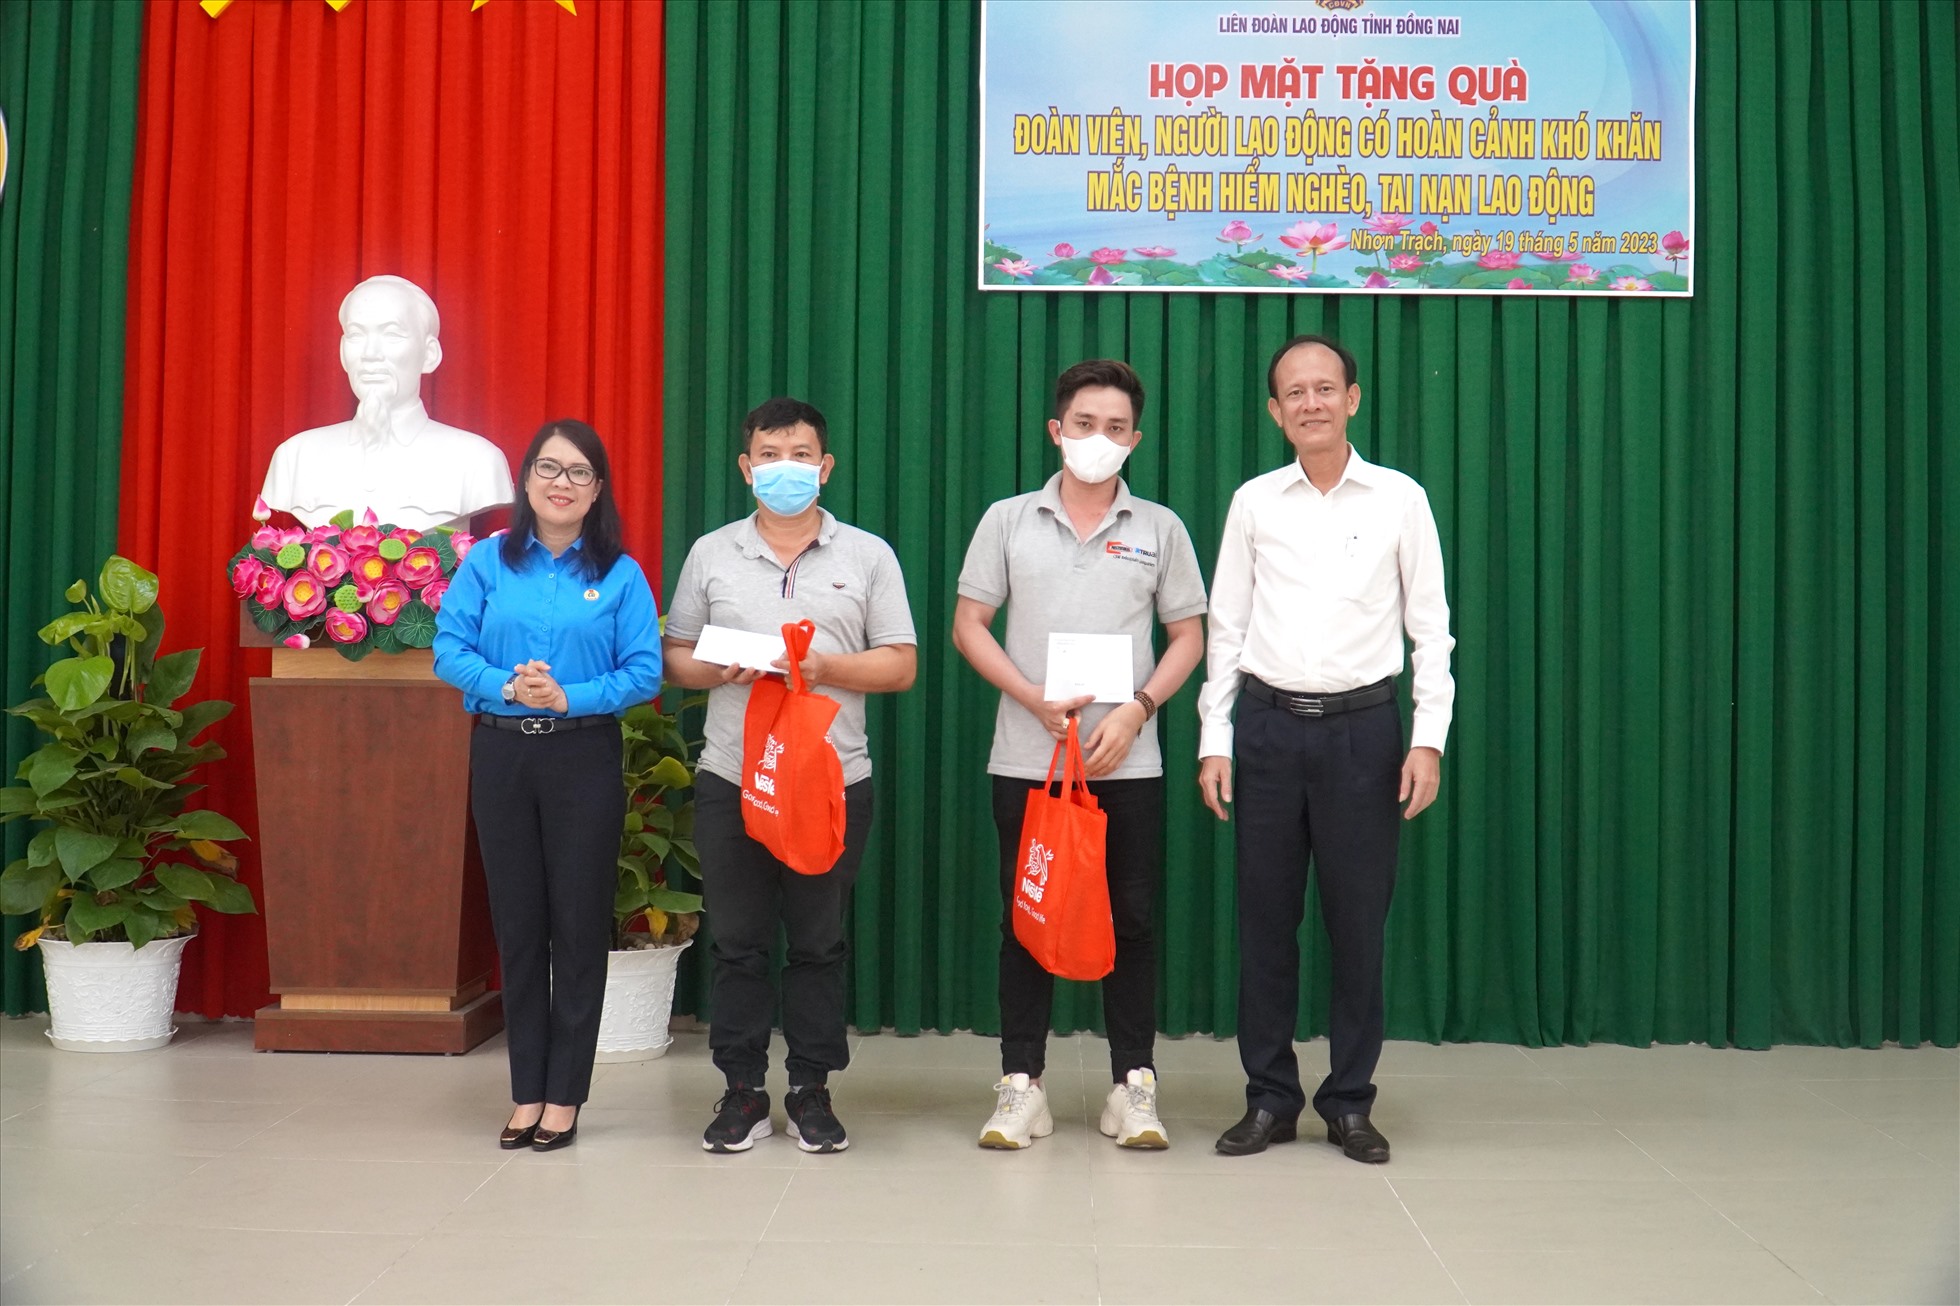 Ban chỉ đạo An toàn vệ sinh lao động tỉnh Đồng Nai tặng phần quà trị giá 5 triệu đồng/trường hợp cho 2 công nhân. Ảnh: Hà Anh Chiến